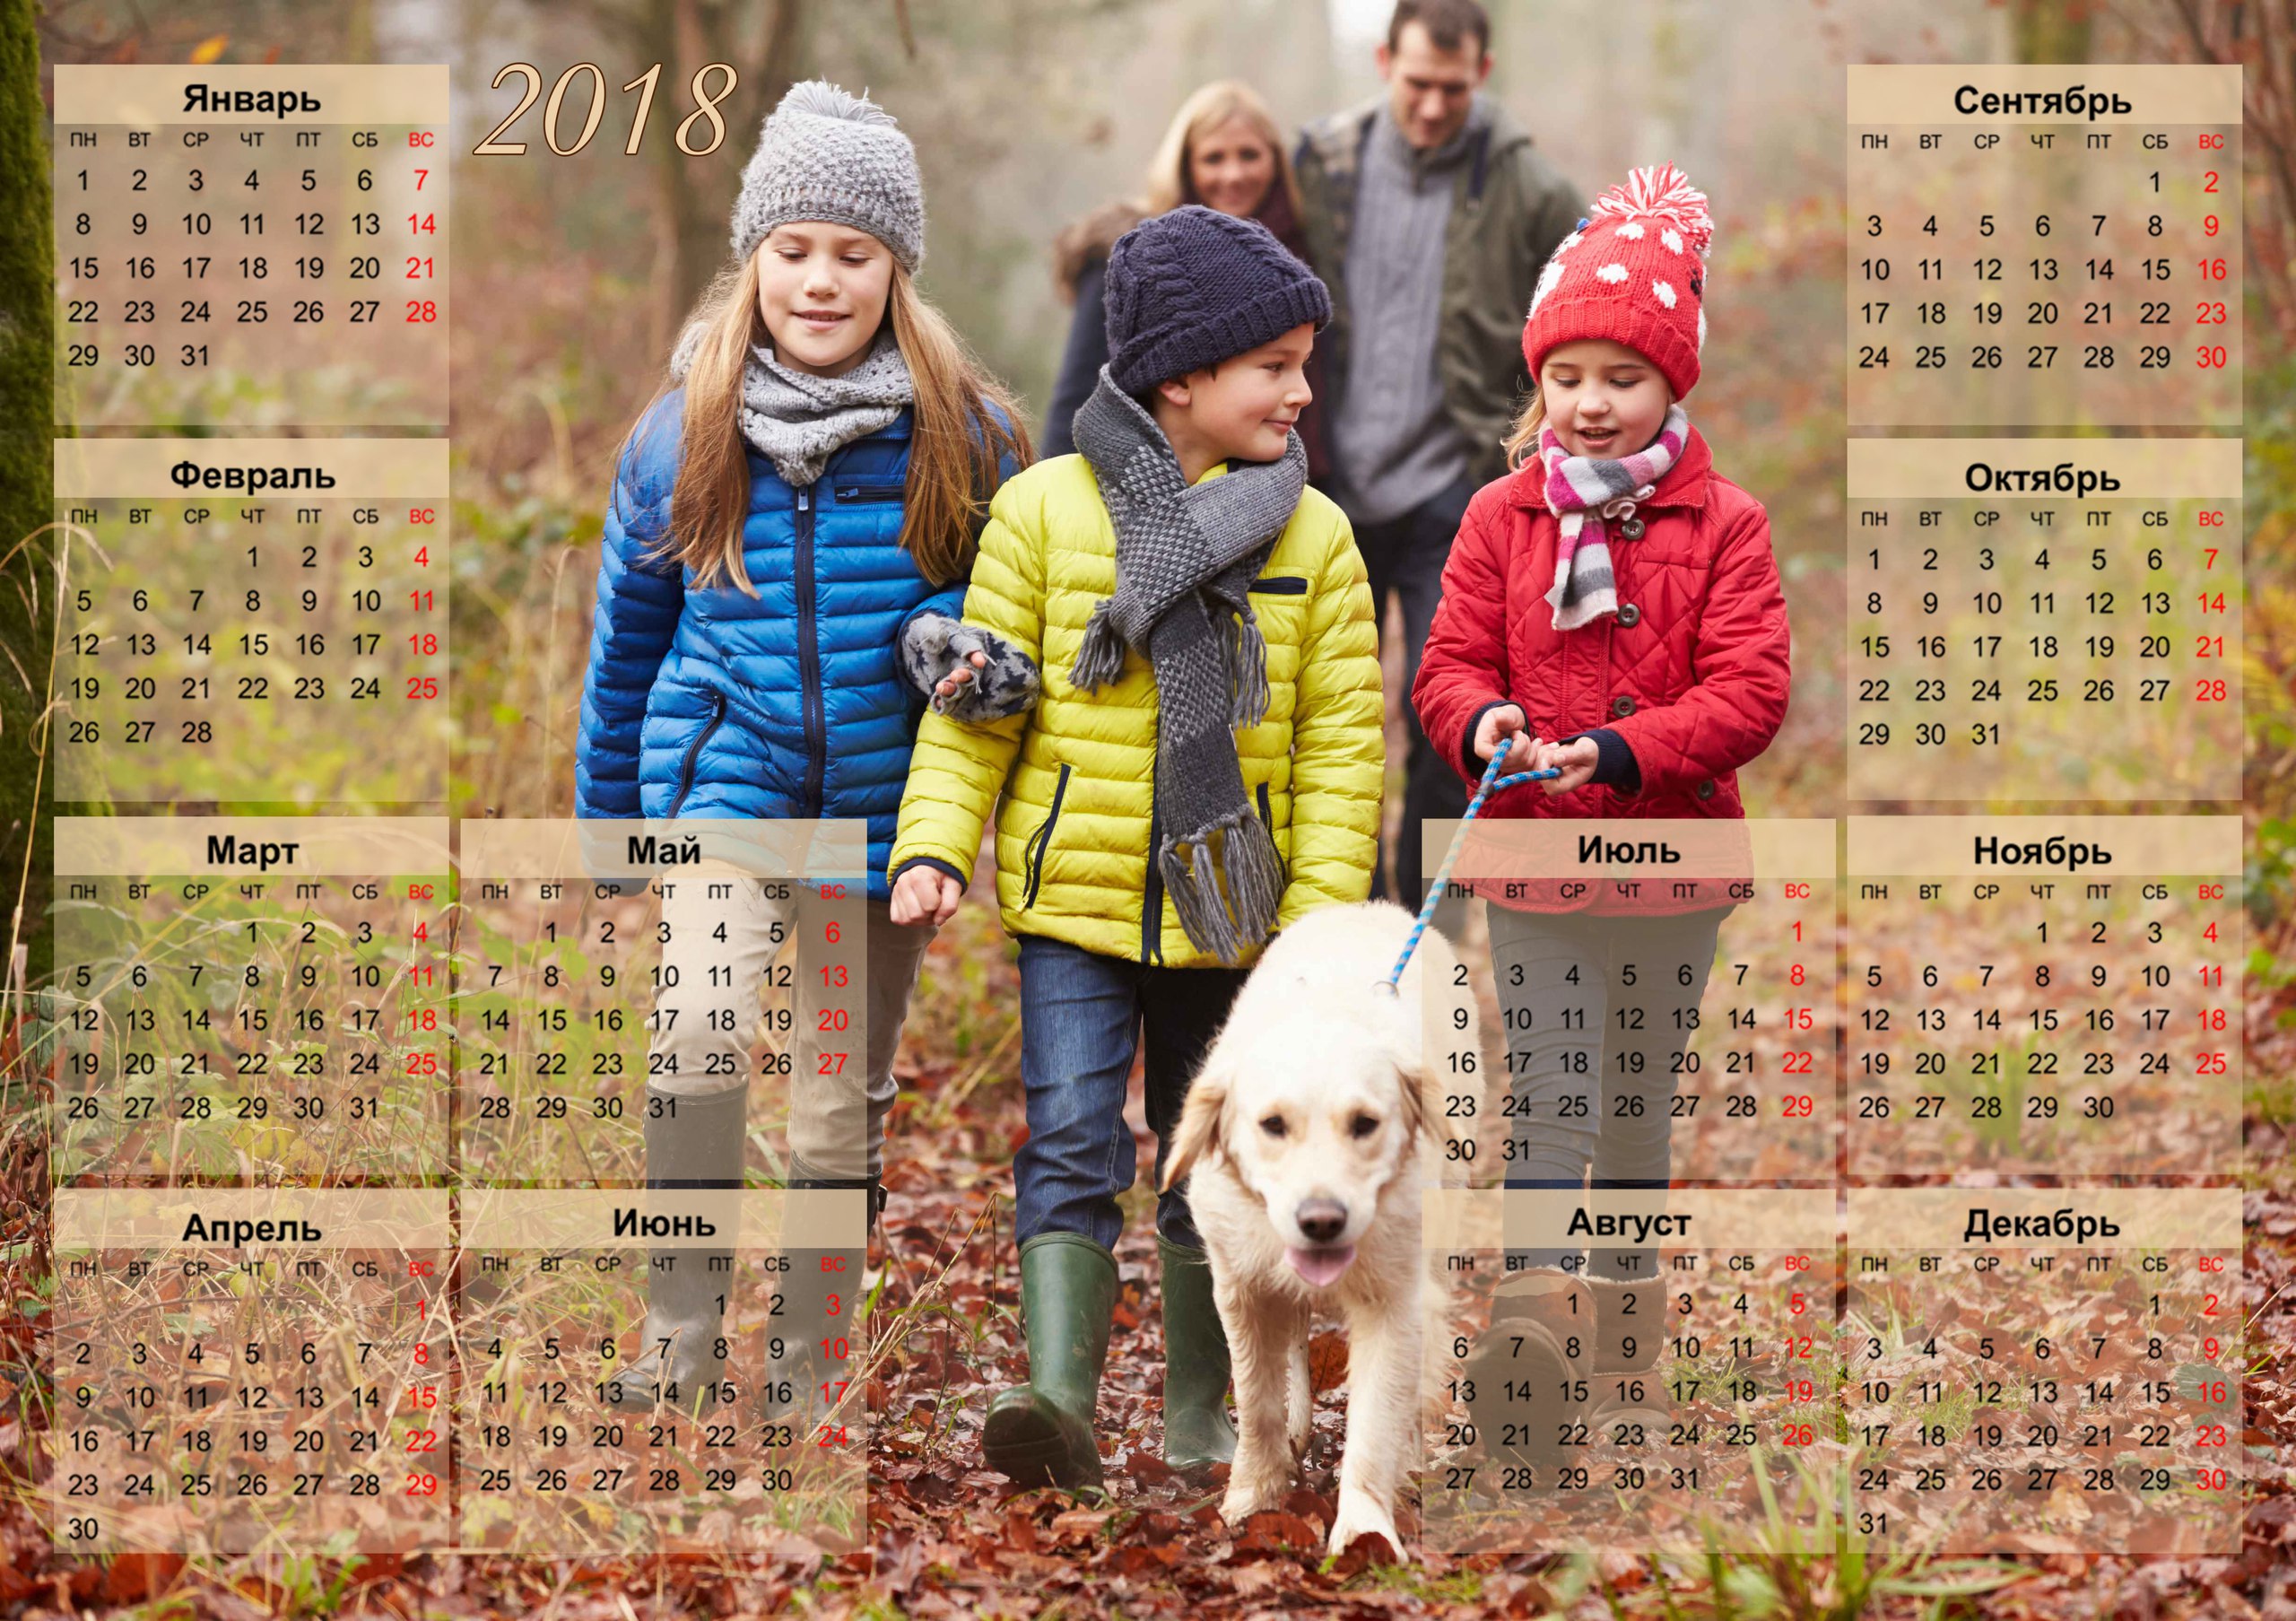 Календари с фото твоих друзей